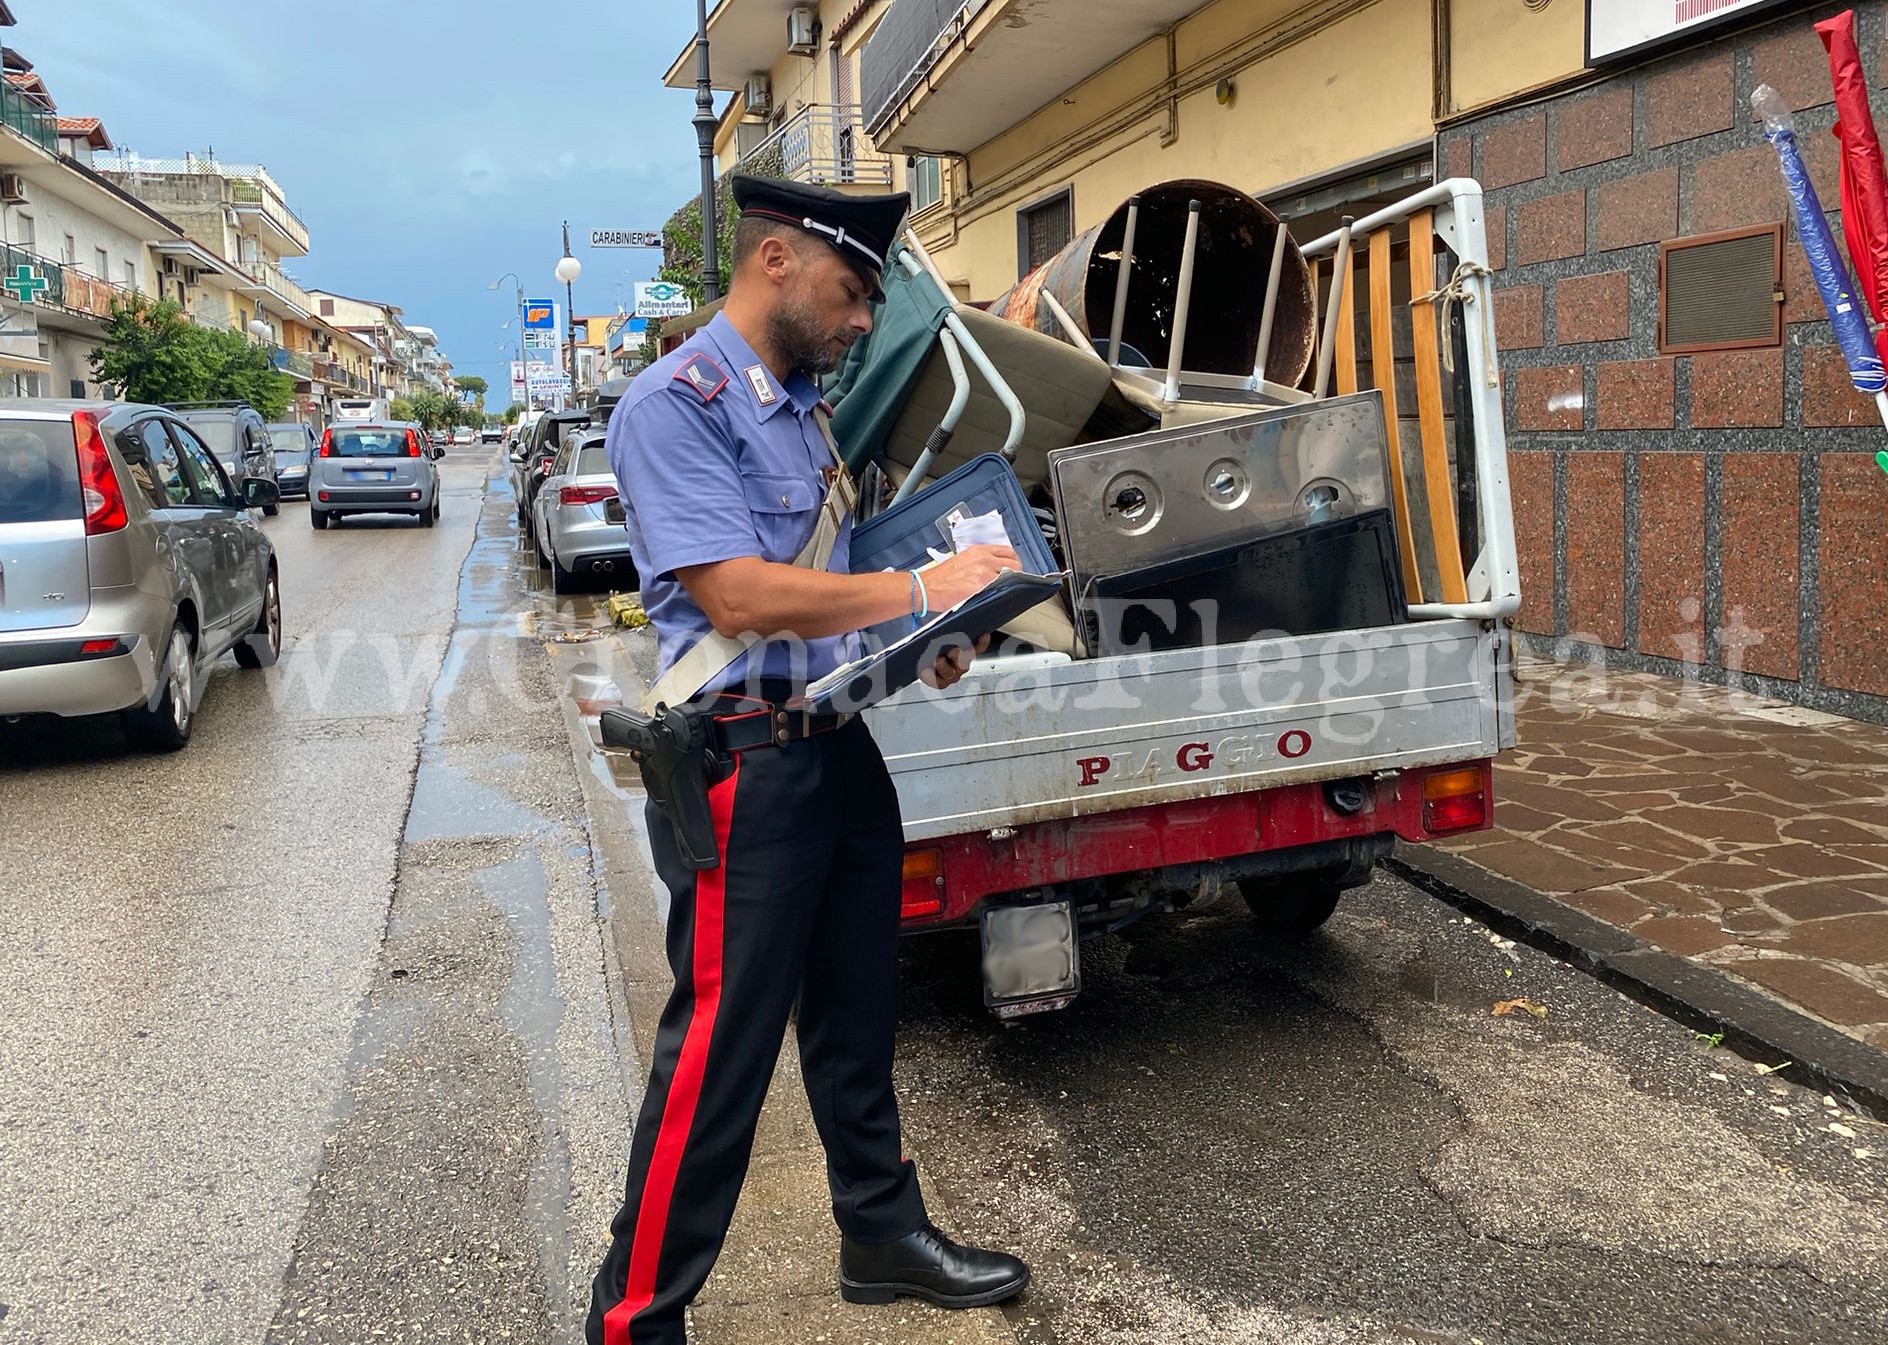 Trasporto illecito di rifiuti: 3 persone denunciate dai carabinieri